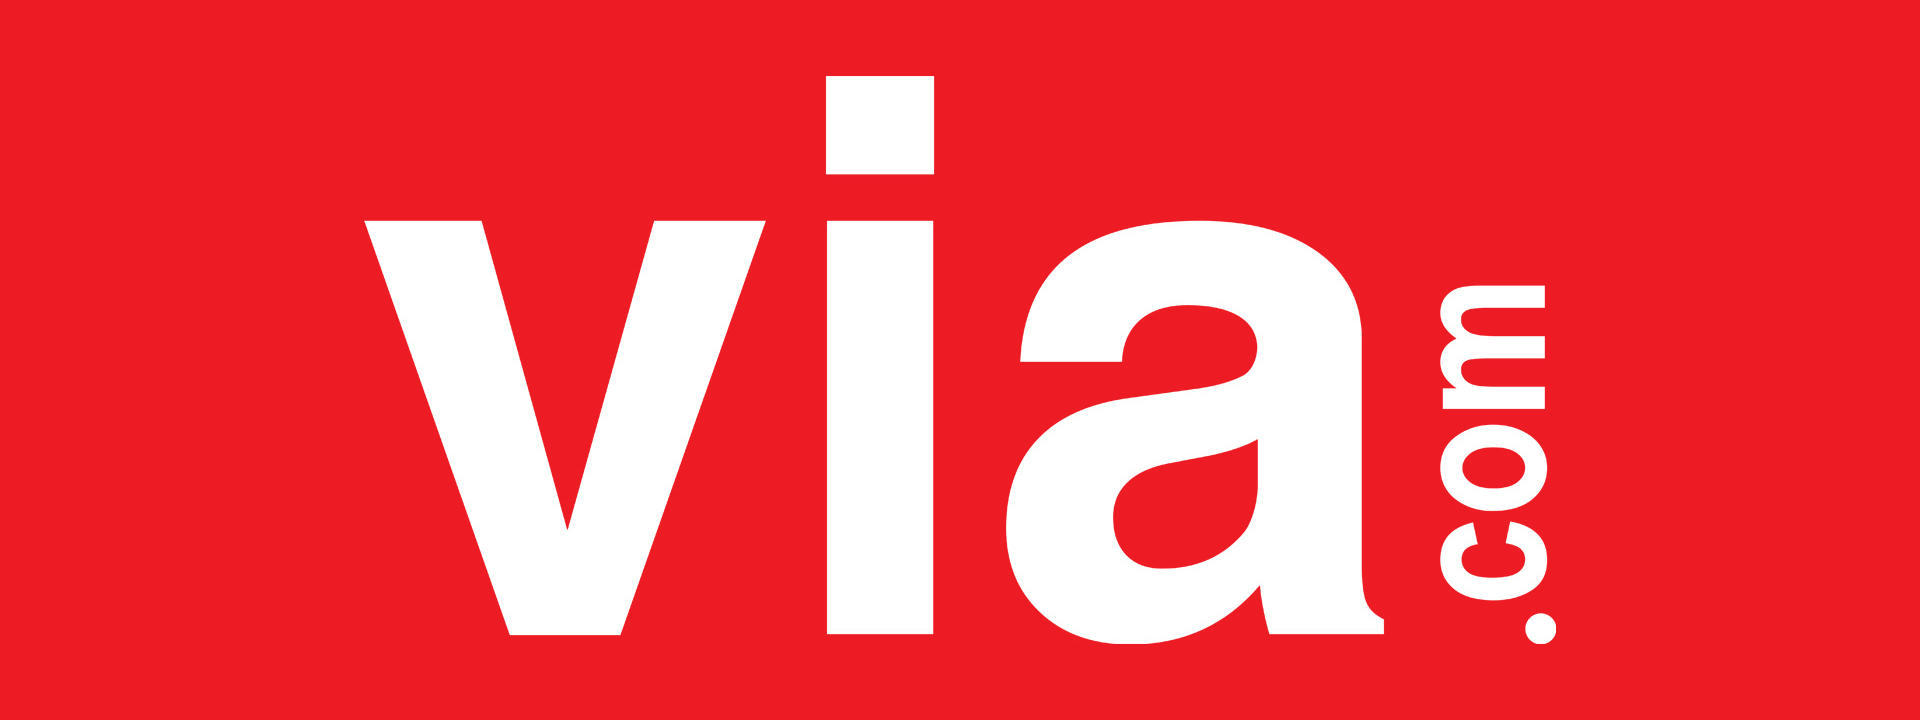 via travel logo